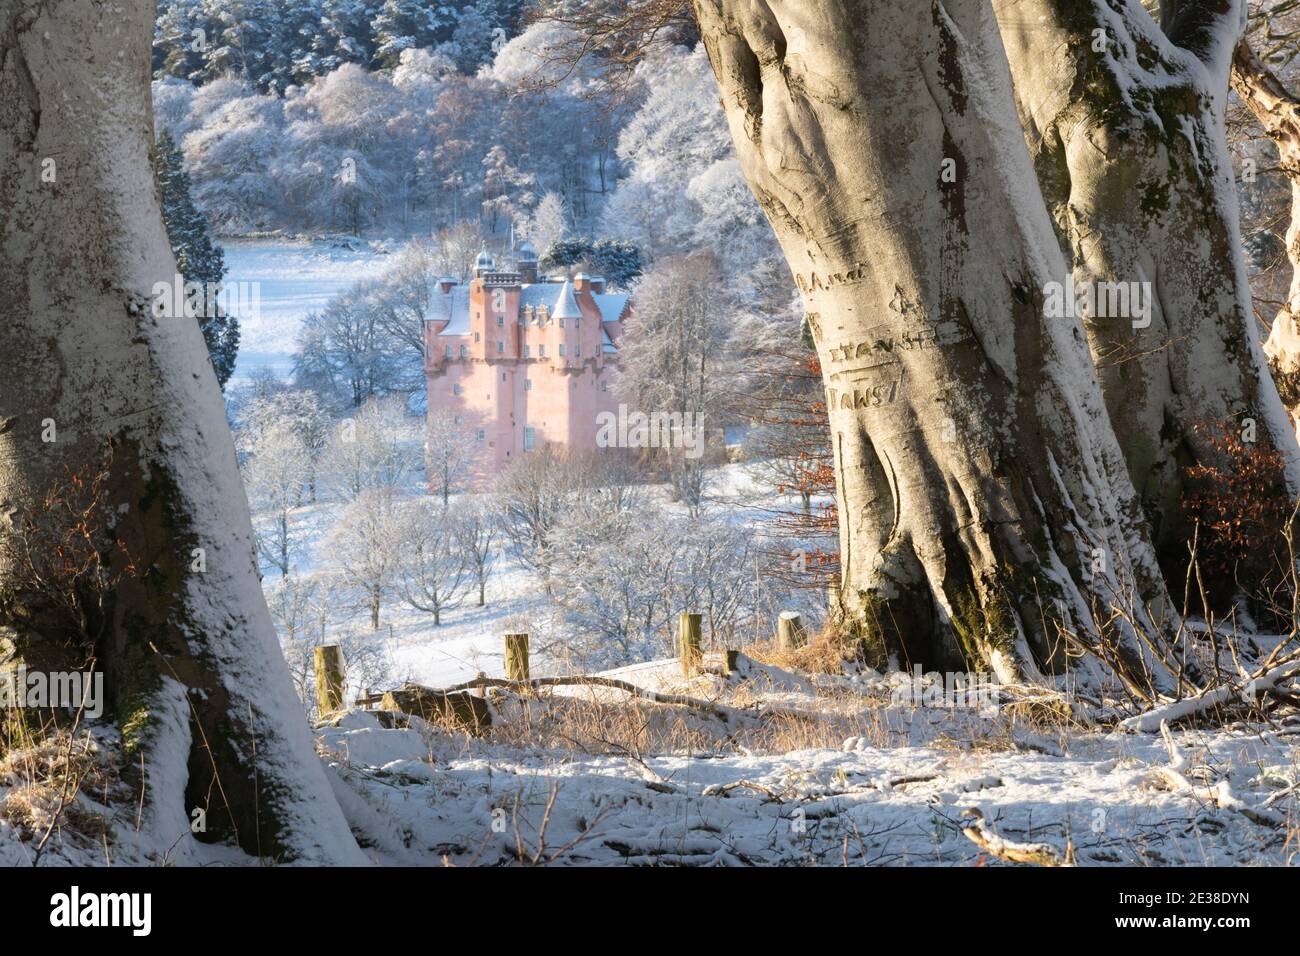 Une ligne d'arbres de Hêtre (Fagus sylvatica) En hiver avec le château Craigievar sur une colline Frosty à l'intérieur La distance Banque D'Images